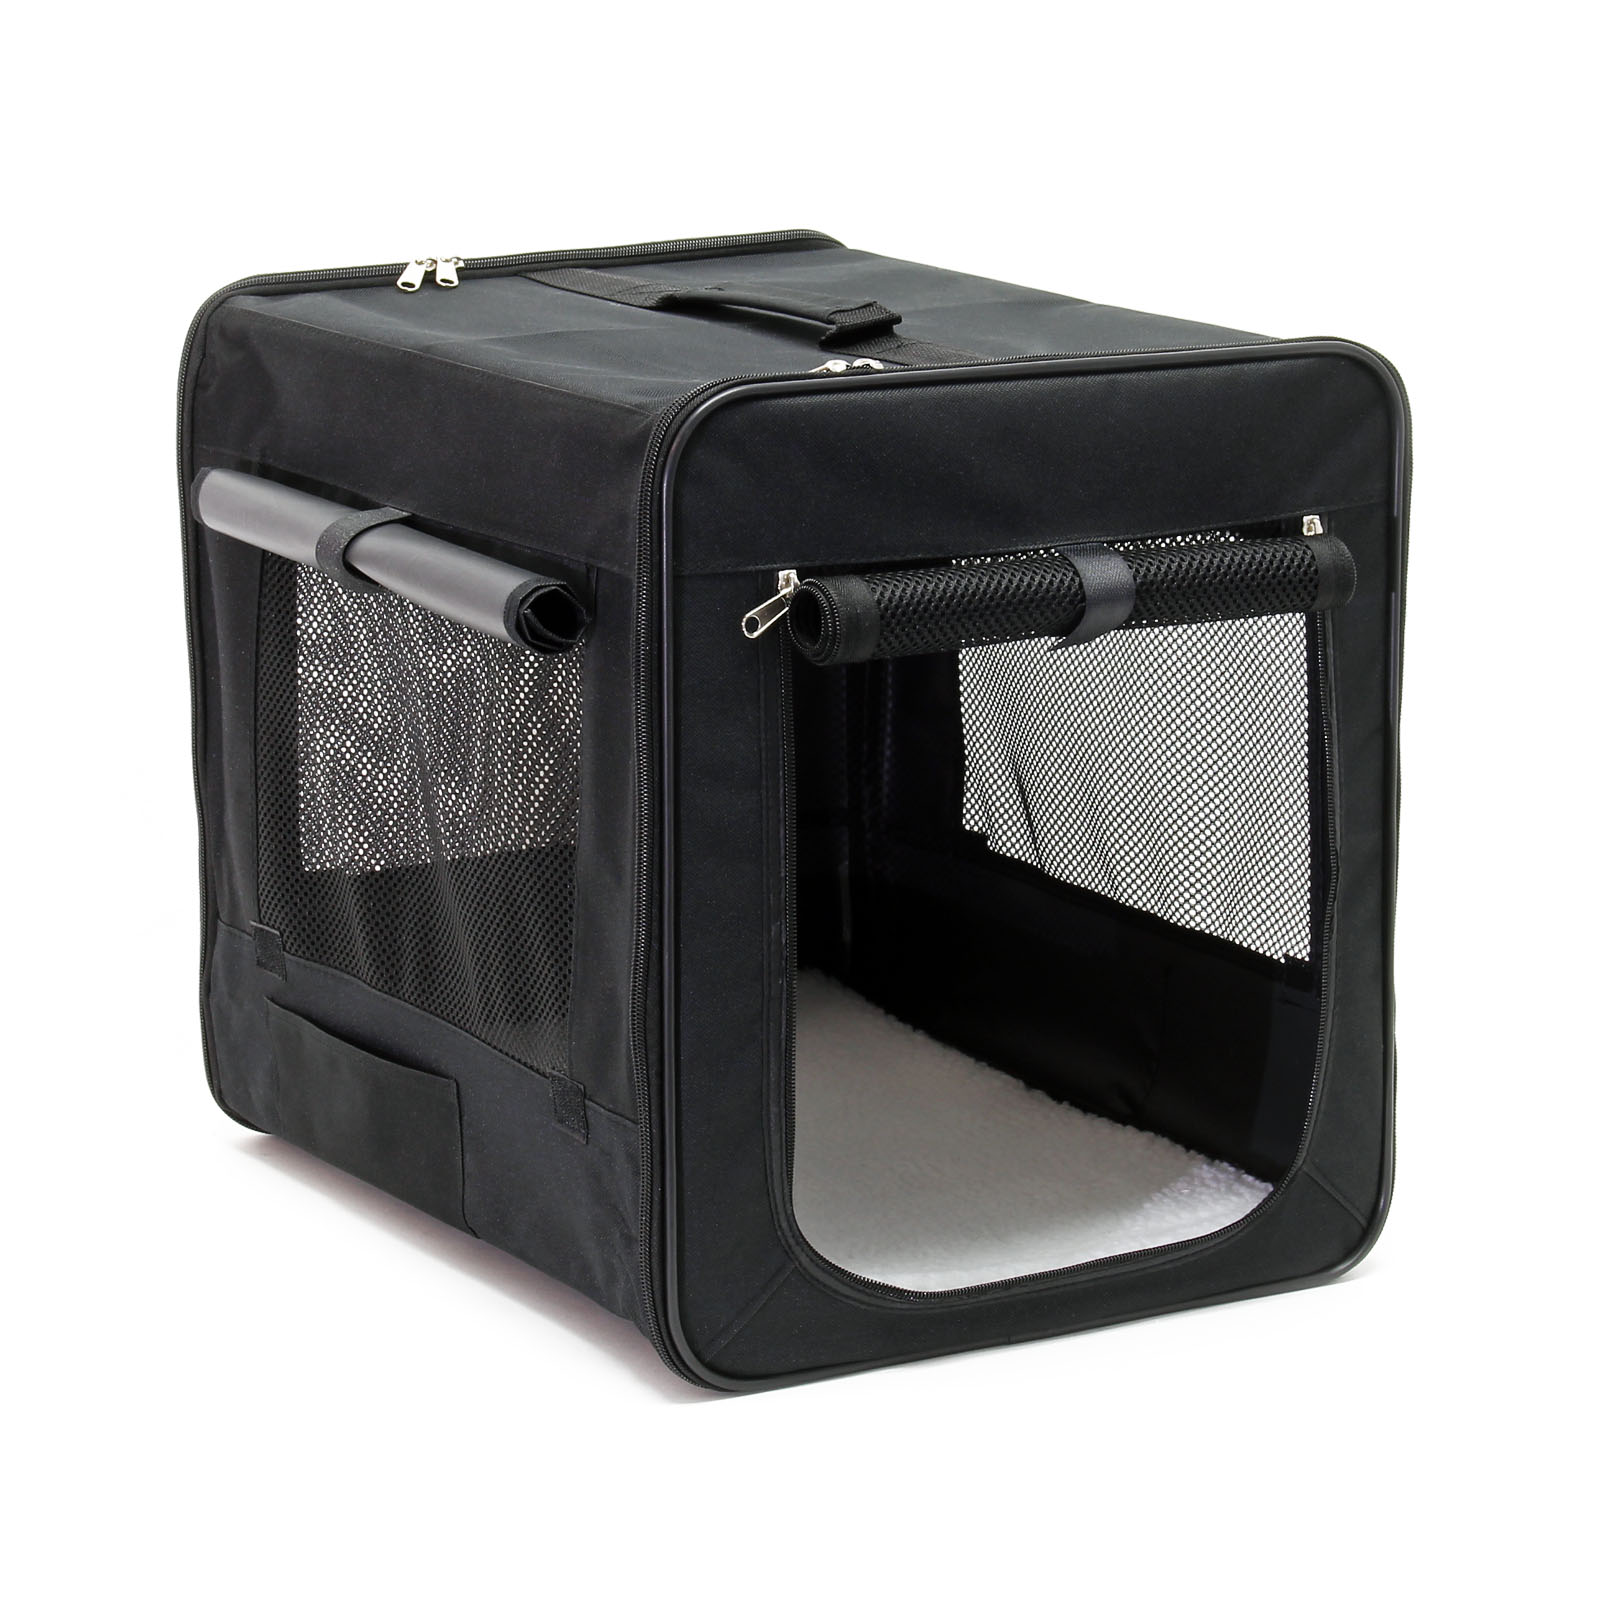 Faltbare Transportbox für Haustiere, Größe M (58x46x53 cm), Reisebox